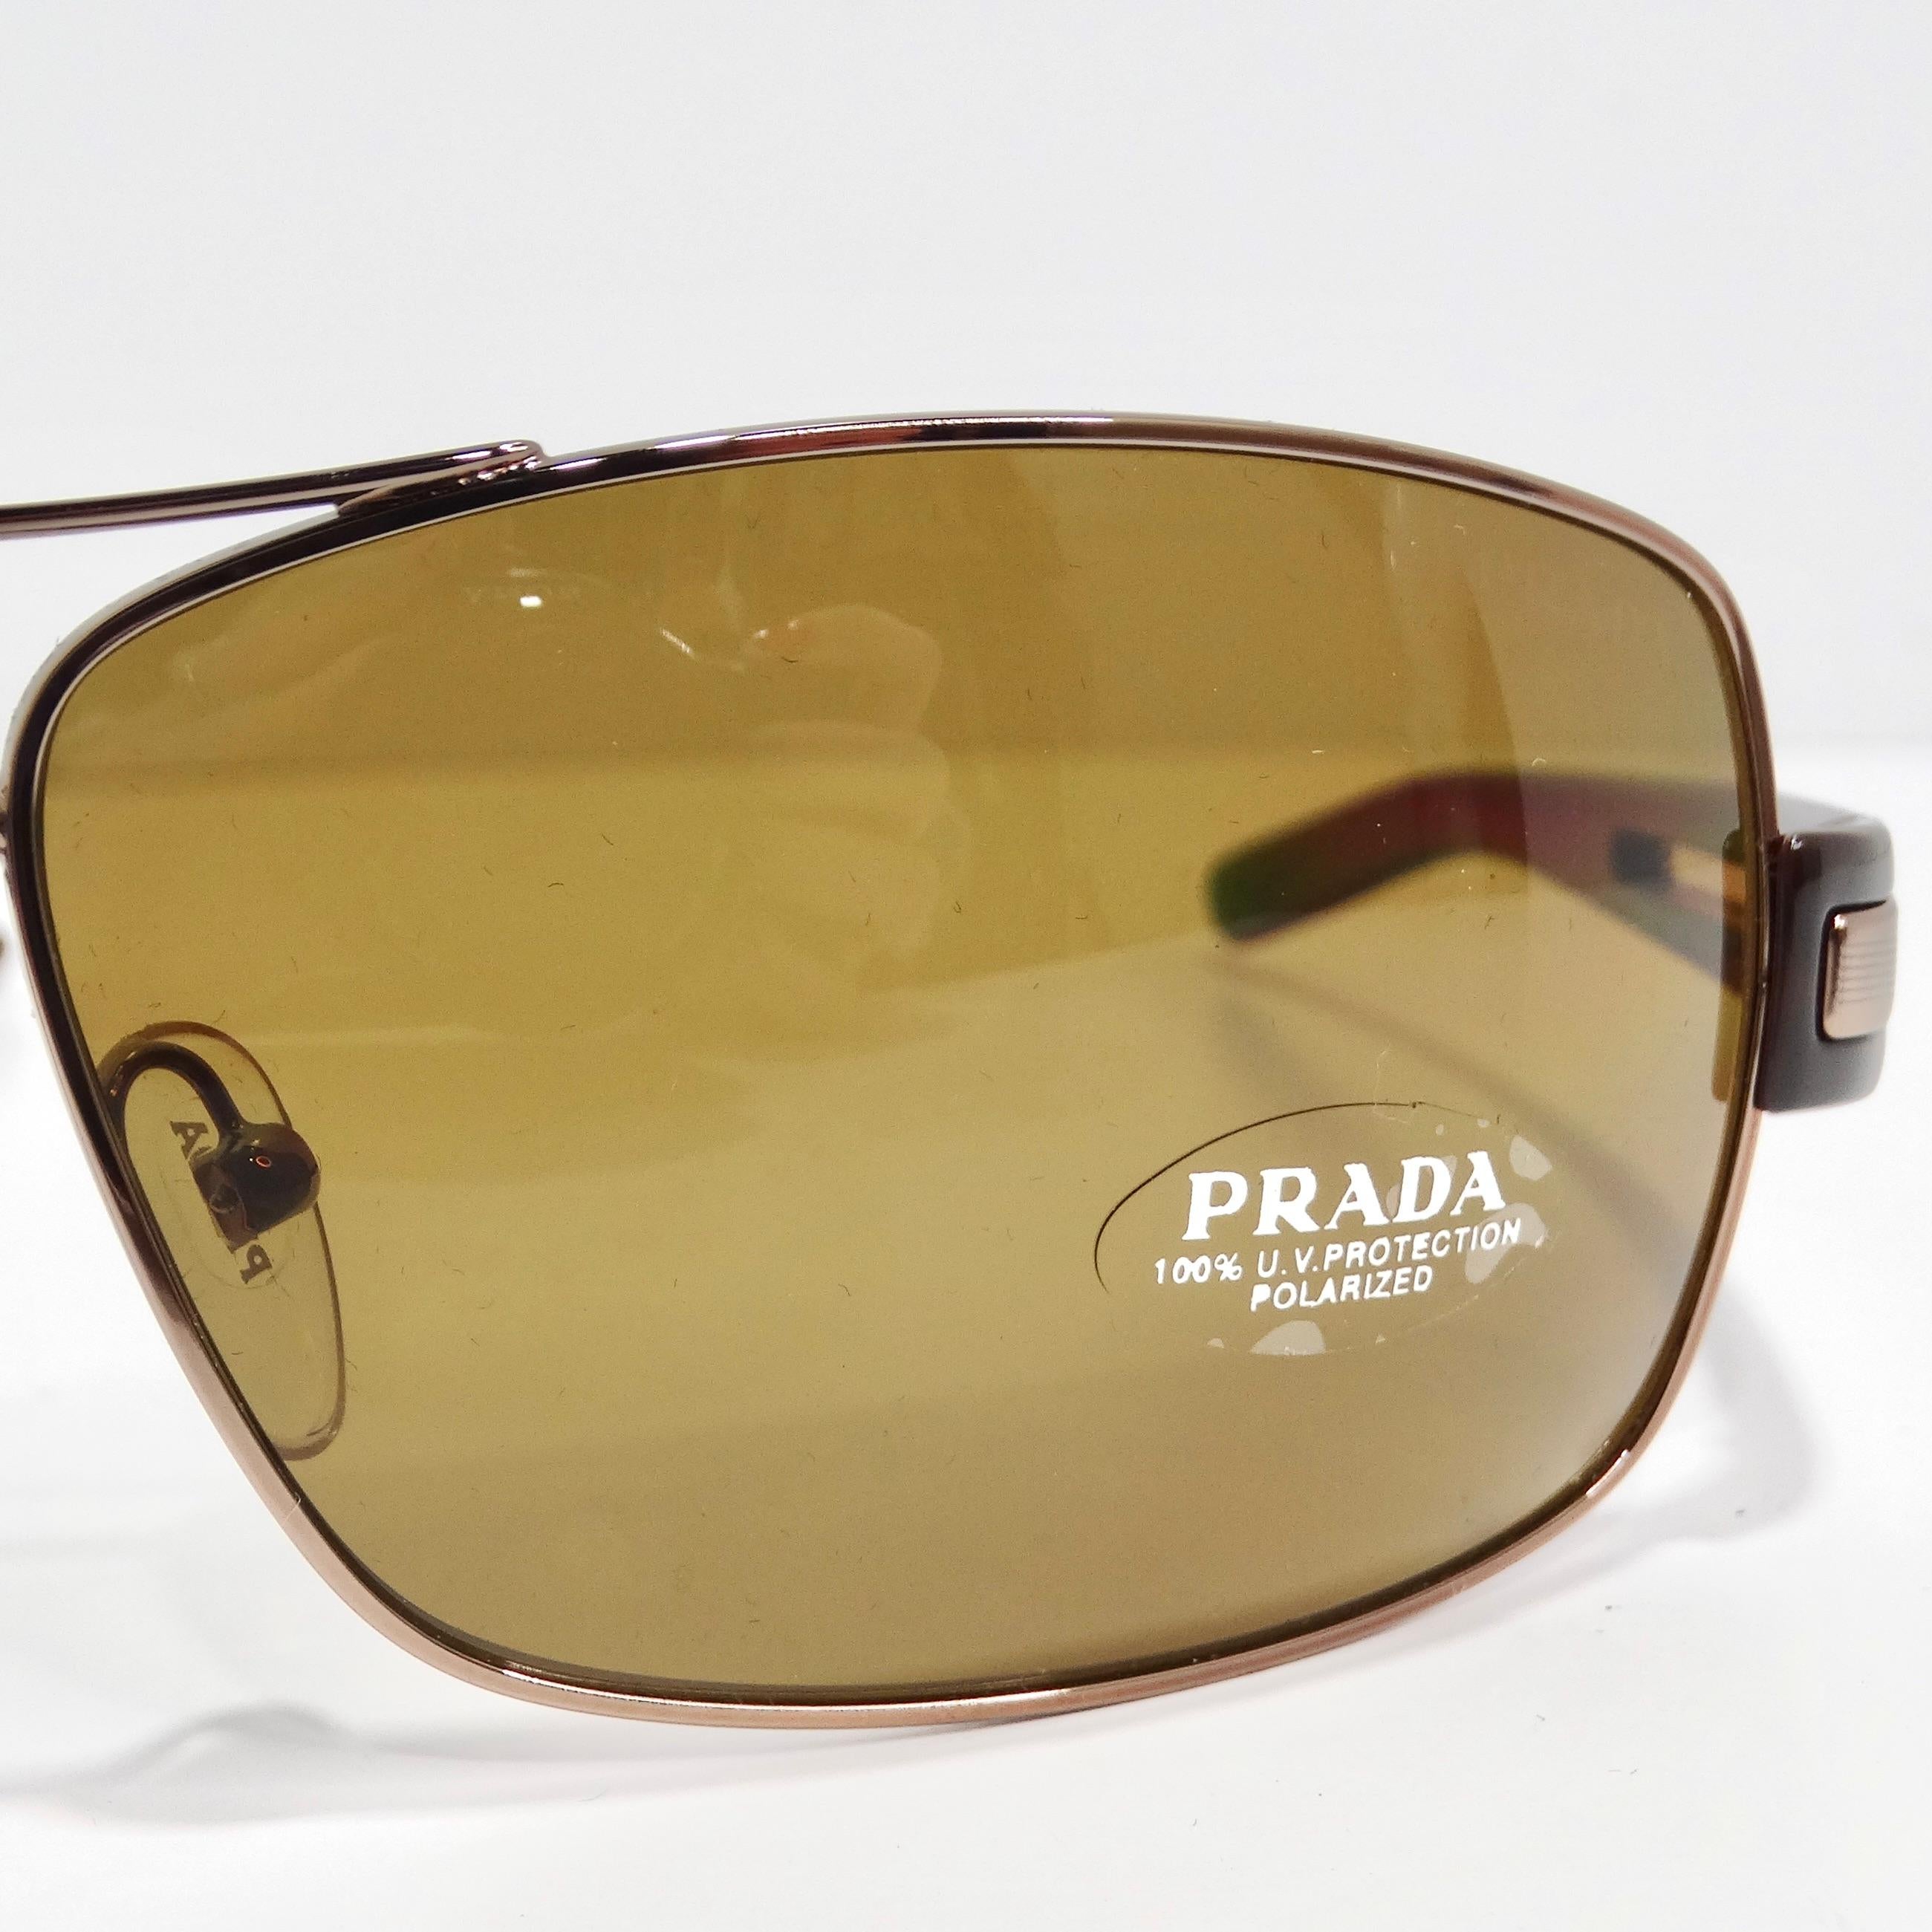 Les lunettes de soleil Aviator Prada 1990 marron sont des lunettes de soleil de style aviateur classique, d'un chic et d'une sophistication intemporels. Ces lunettes de soleil présentent de fins bords dorés, associés à des branches brunes ornées de